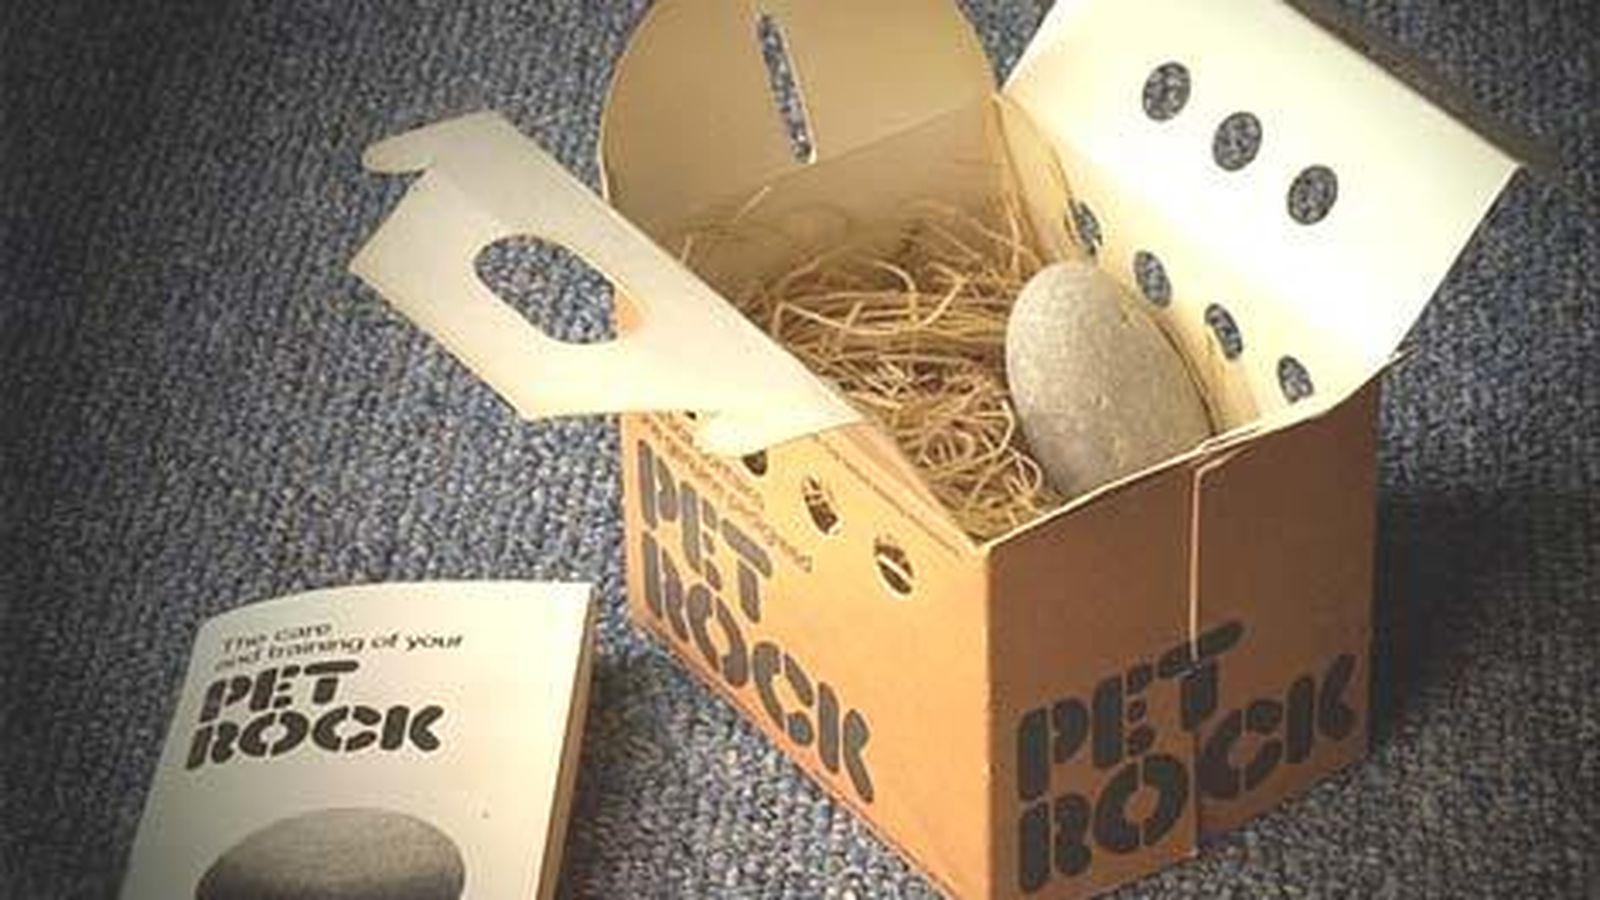 Foto: Las piedras-mascota se reciben en una caja con libro de instrucciones